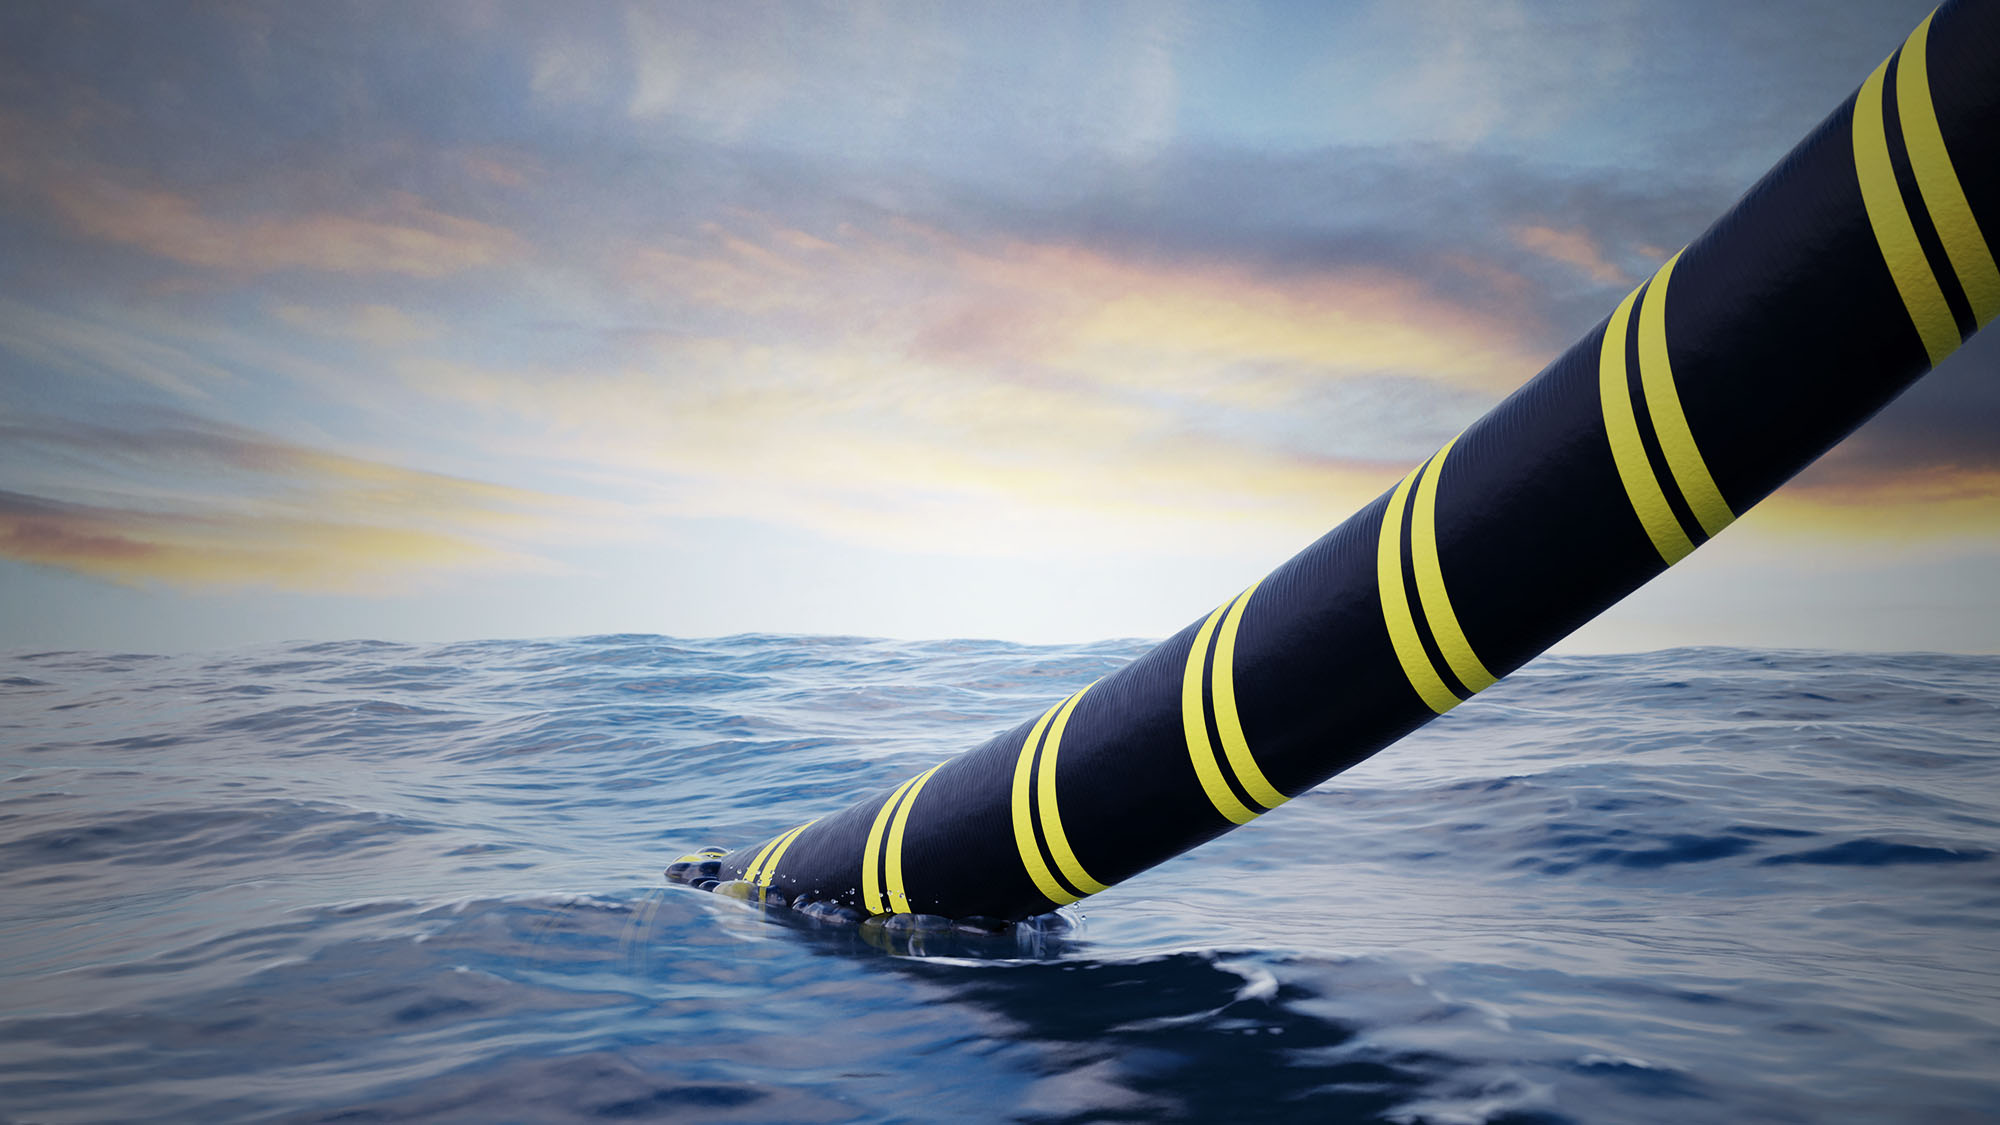 Énergie Renouvelable: Une entreprise veut installer un Câble sous-marin entre le Maroc et la Grande-Bretagne